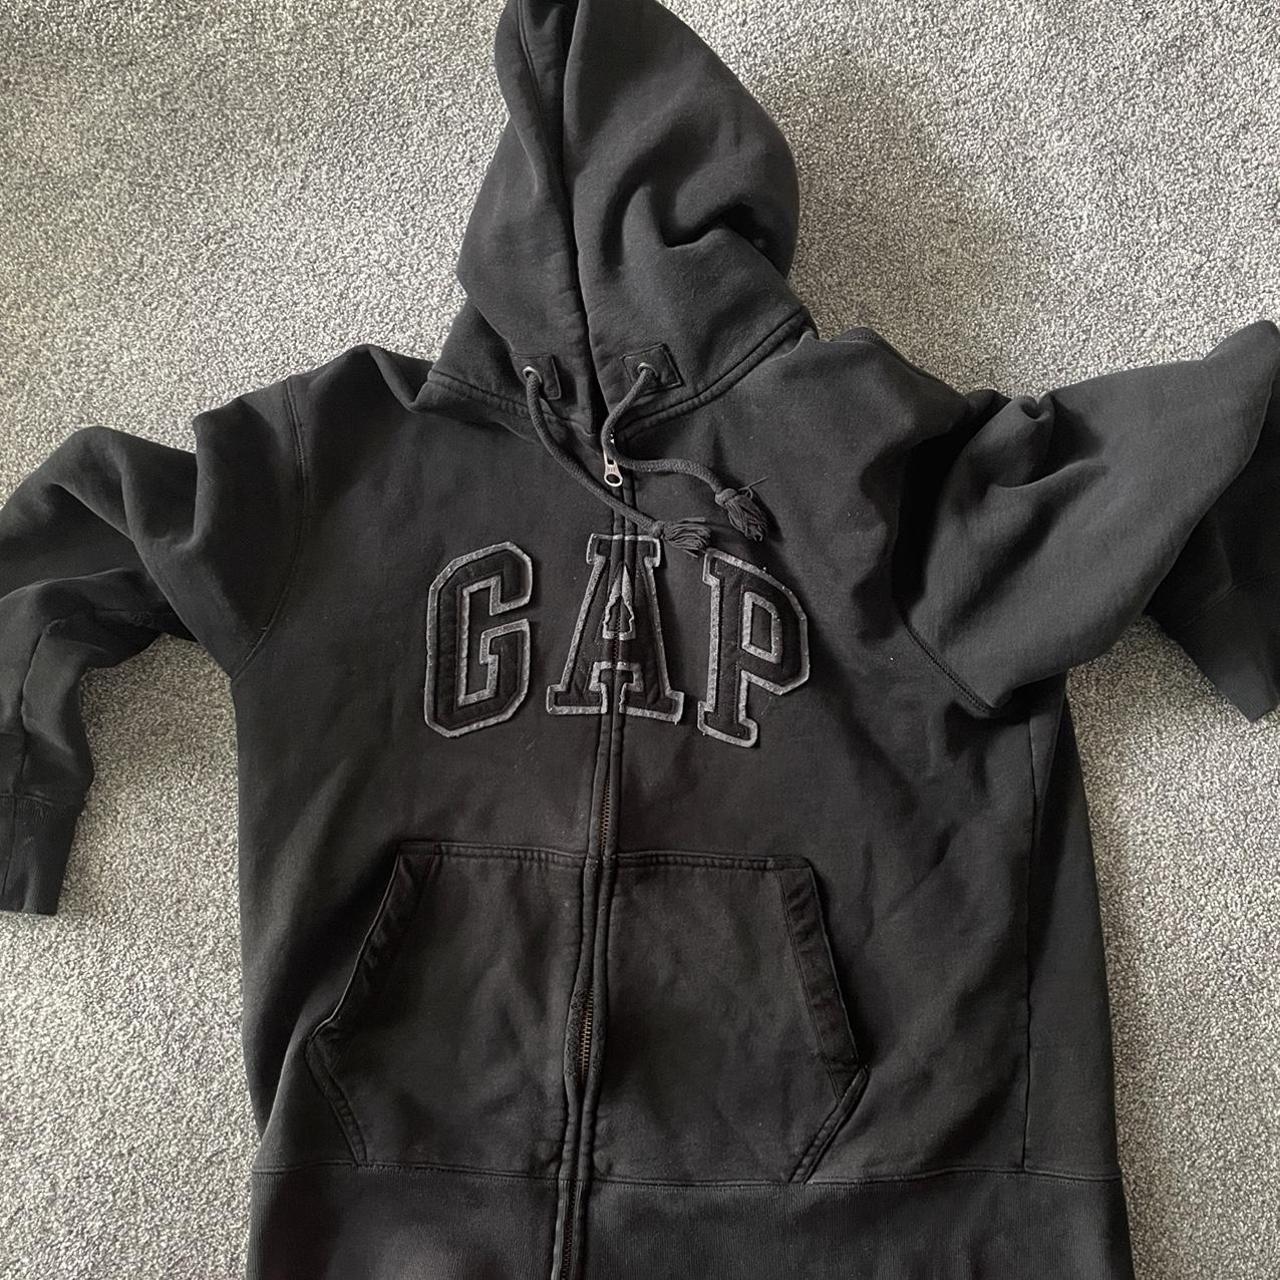 Gap hoodie - Depop